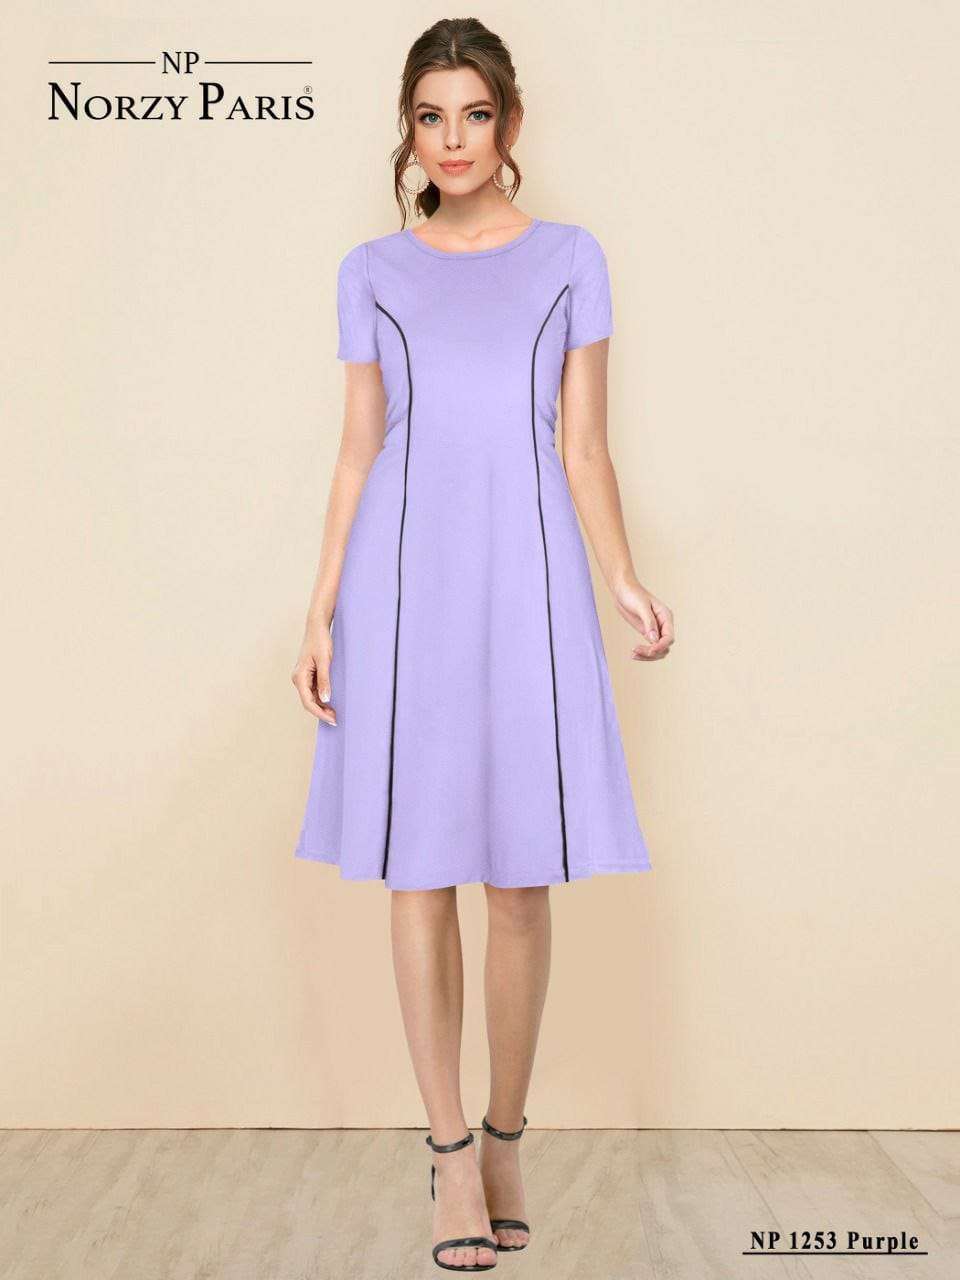 NORZY PARIS NP 1253 Purple Designer Western Dress  Dress Wholesale catalog